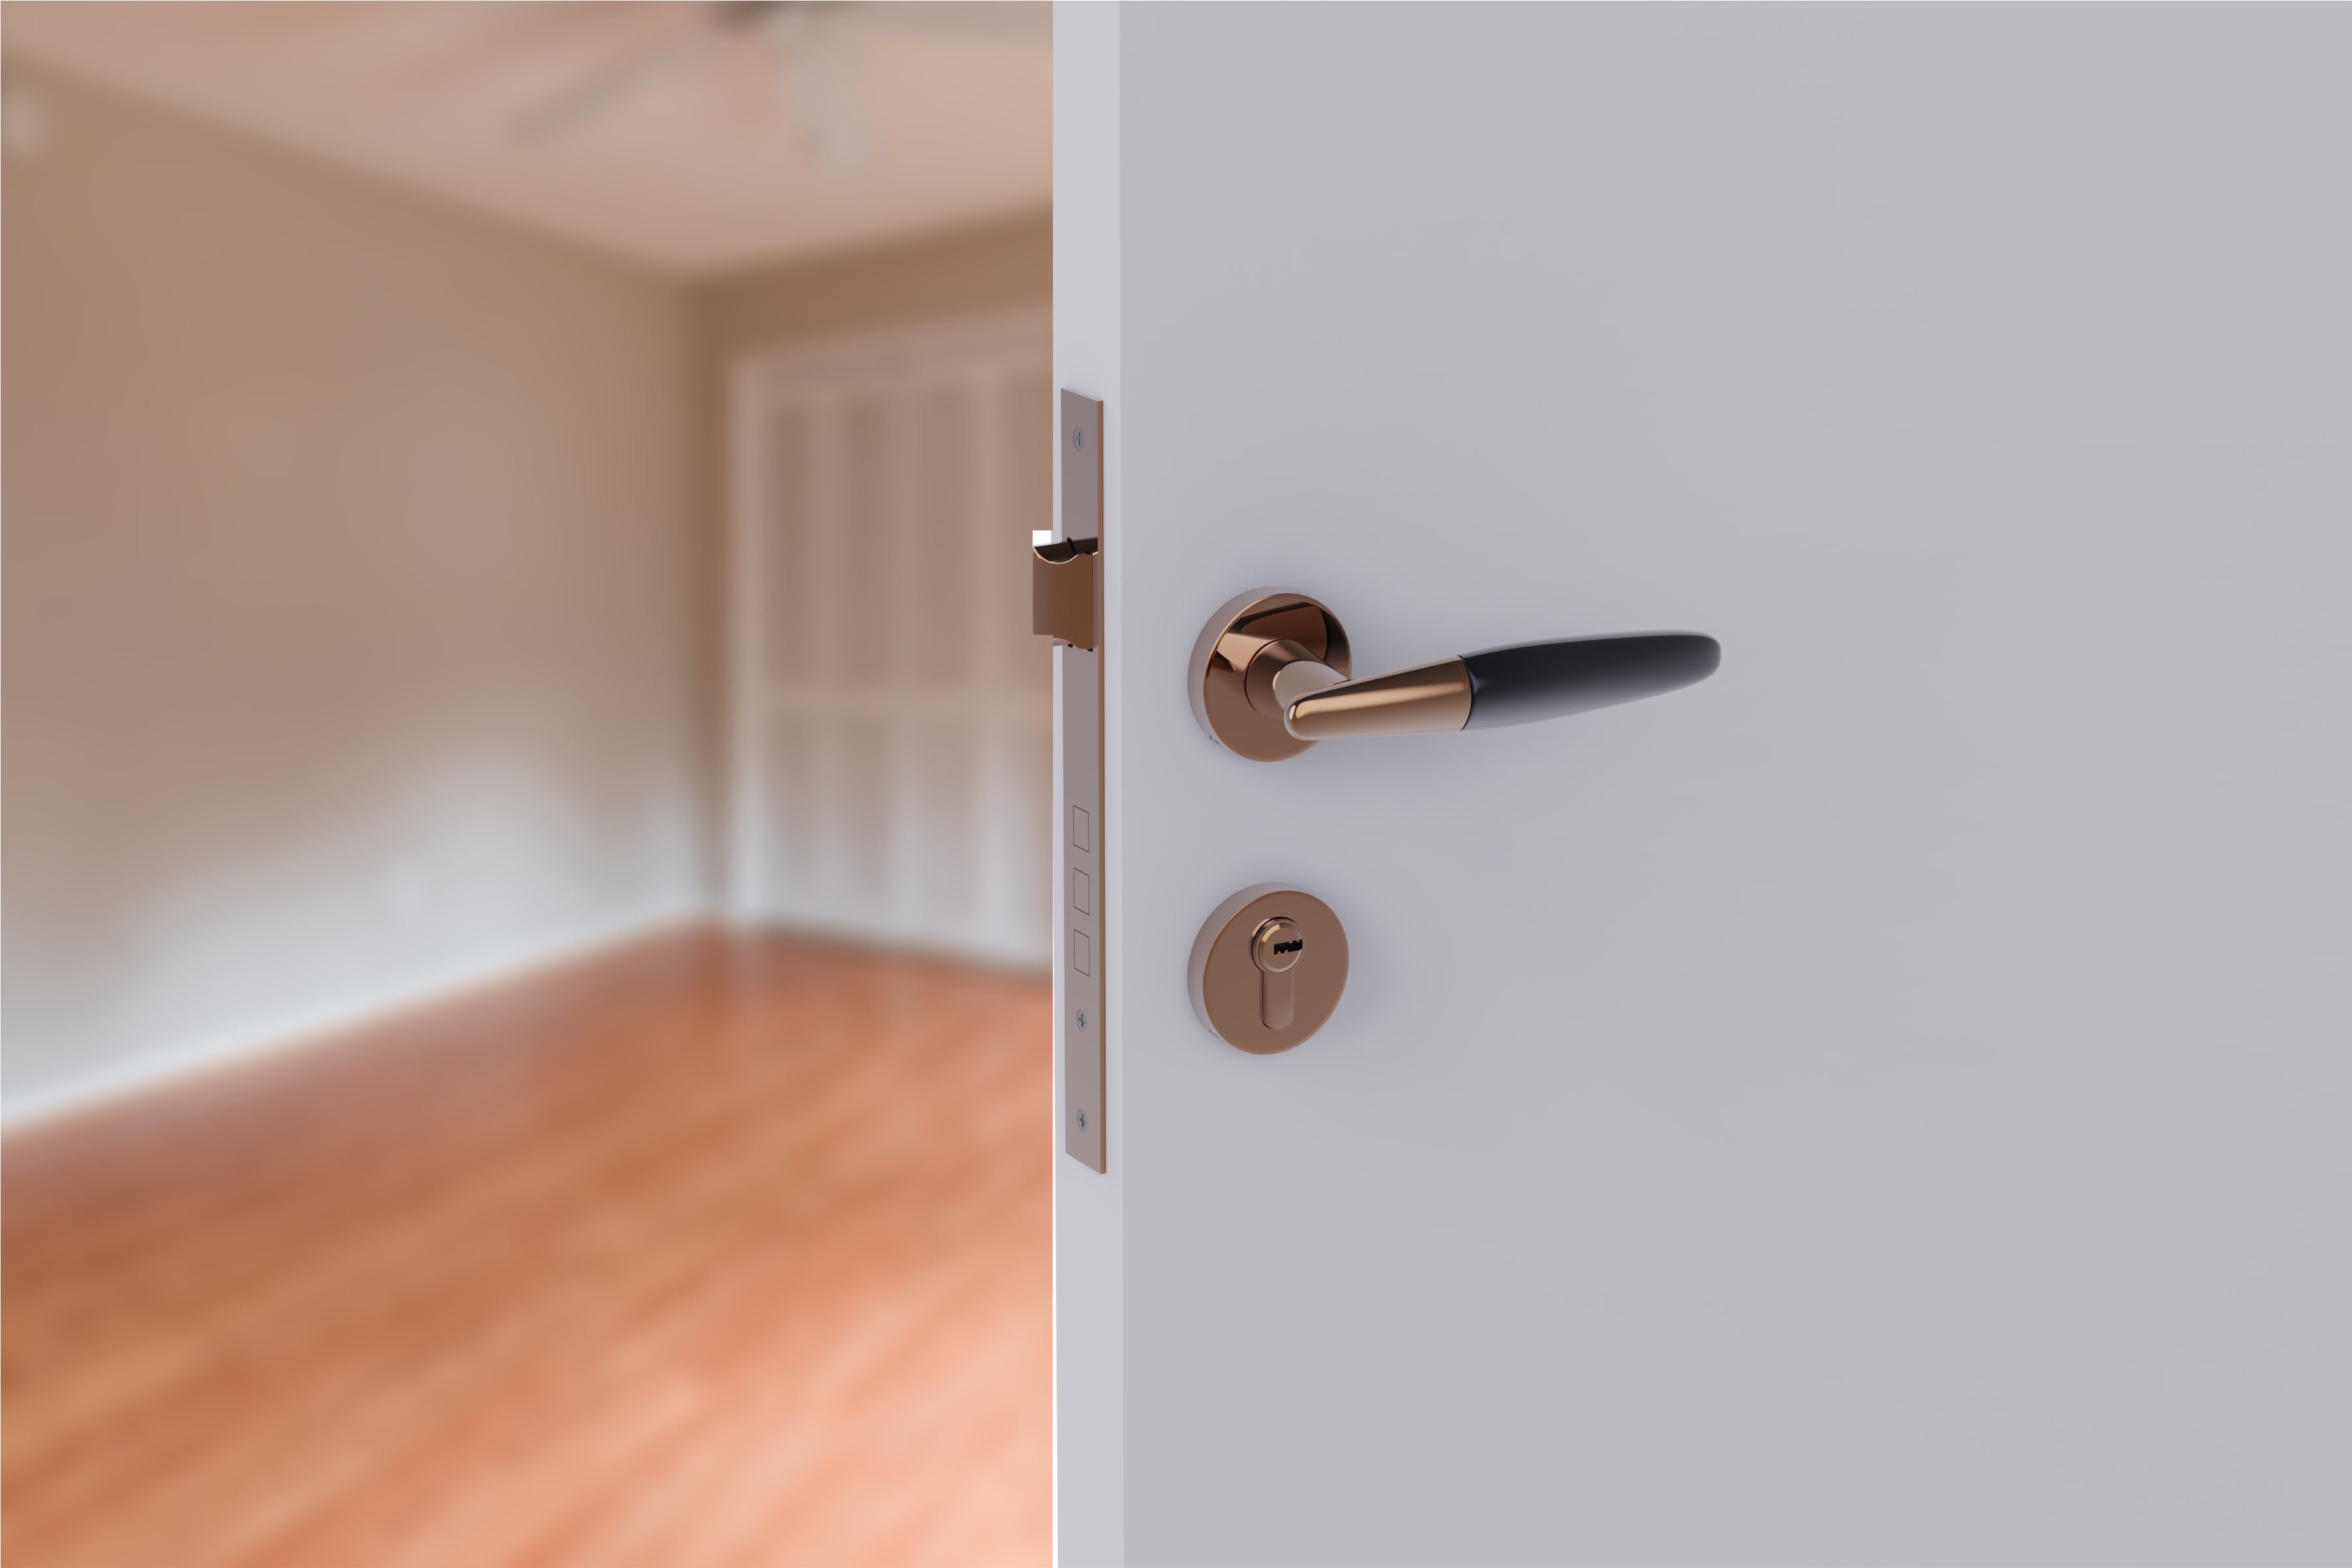 Exclusive Mortise Door Locks for Main Door Lock Handles Set for Home, Bedroom, Hotel, and Office